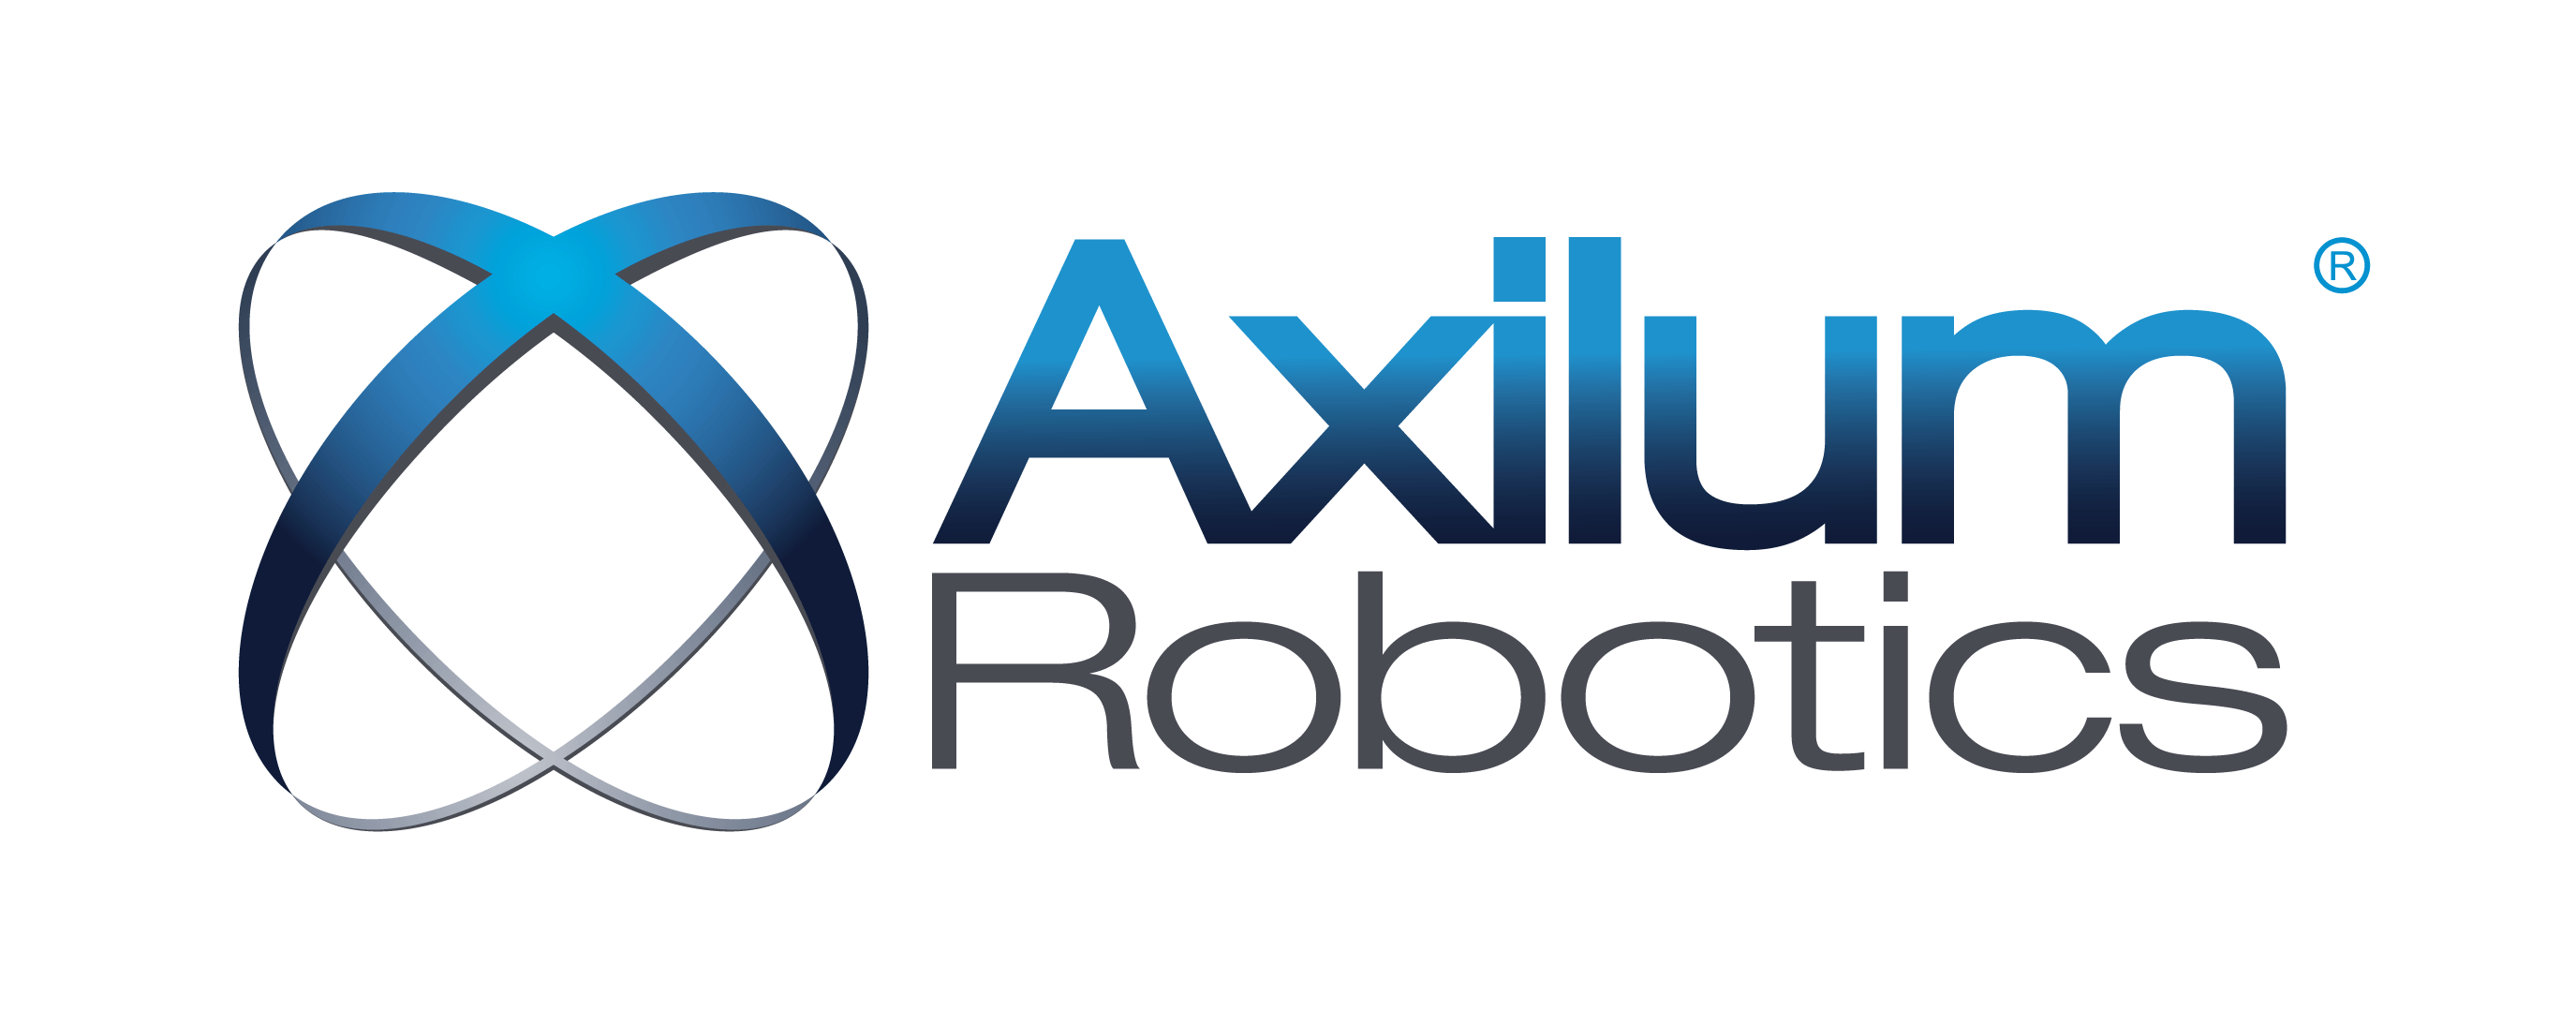 Robot Company Logo - Axilum Robotics for transcranial magnetic stimulation